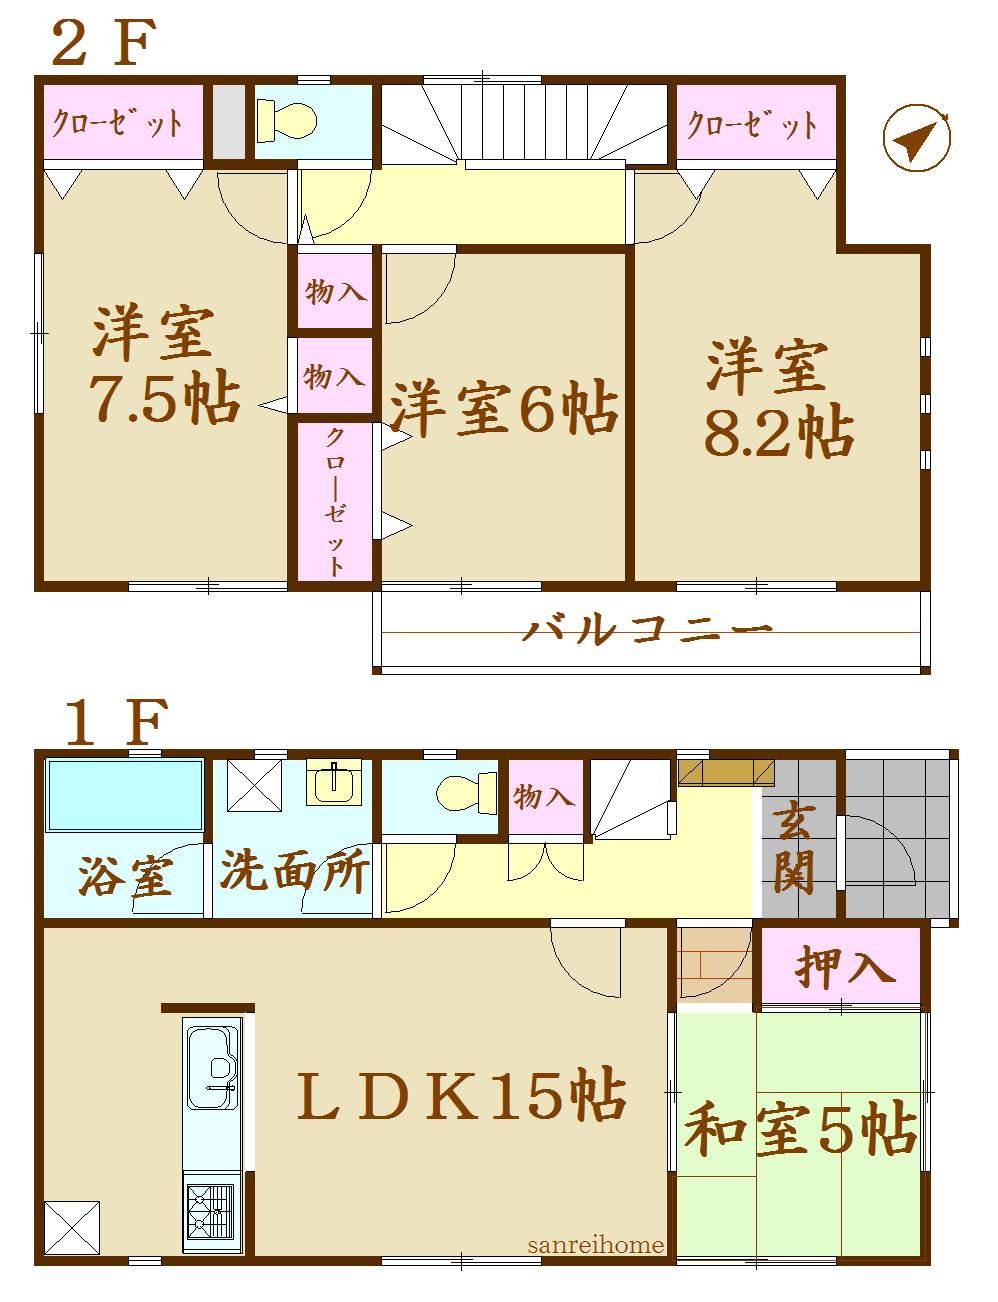 Floor plan. 1839m to Ishinomaki Municipal Kanomata Elementary School